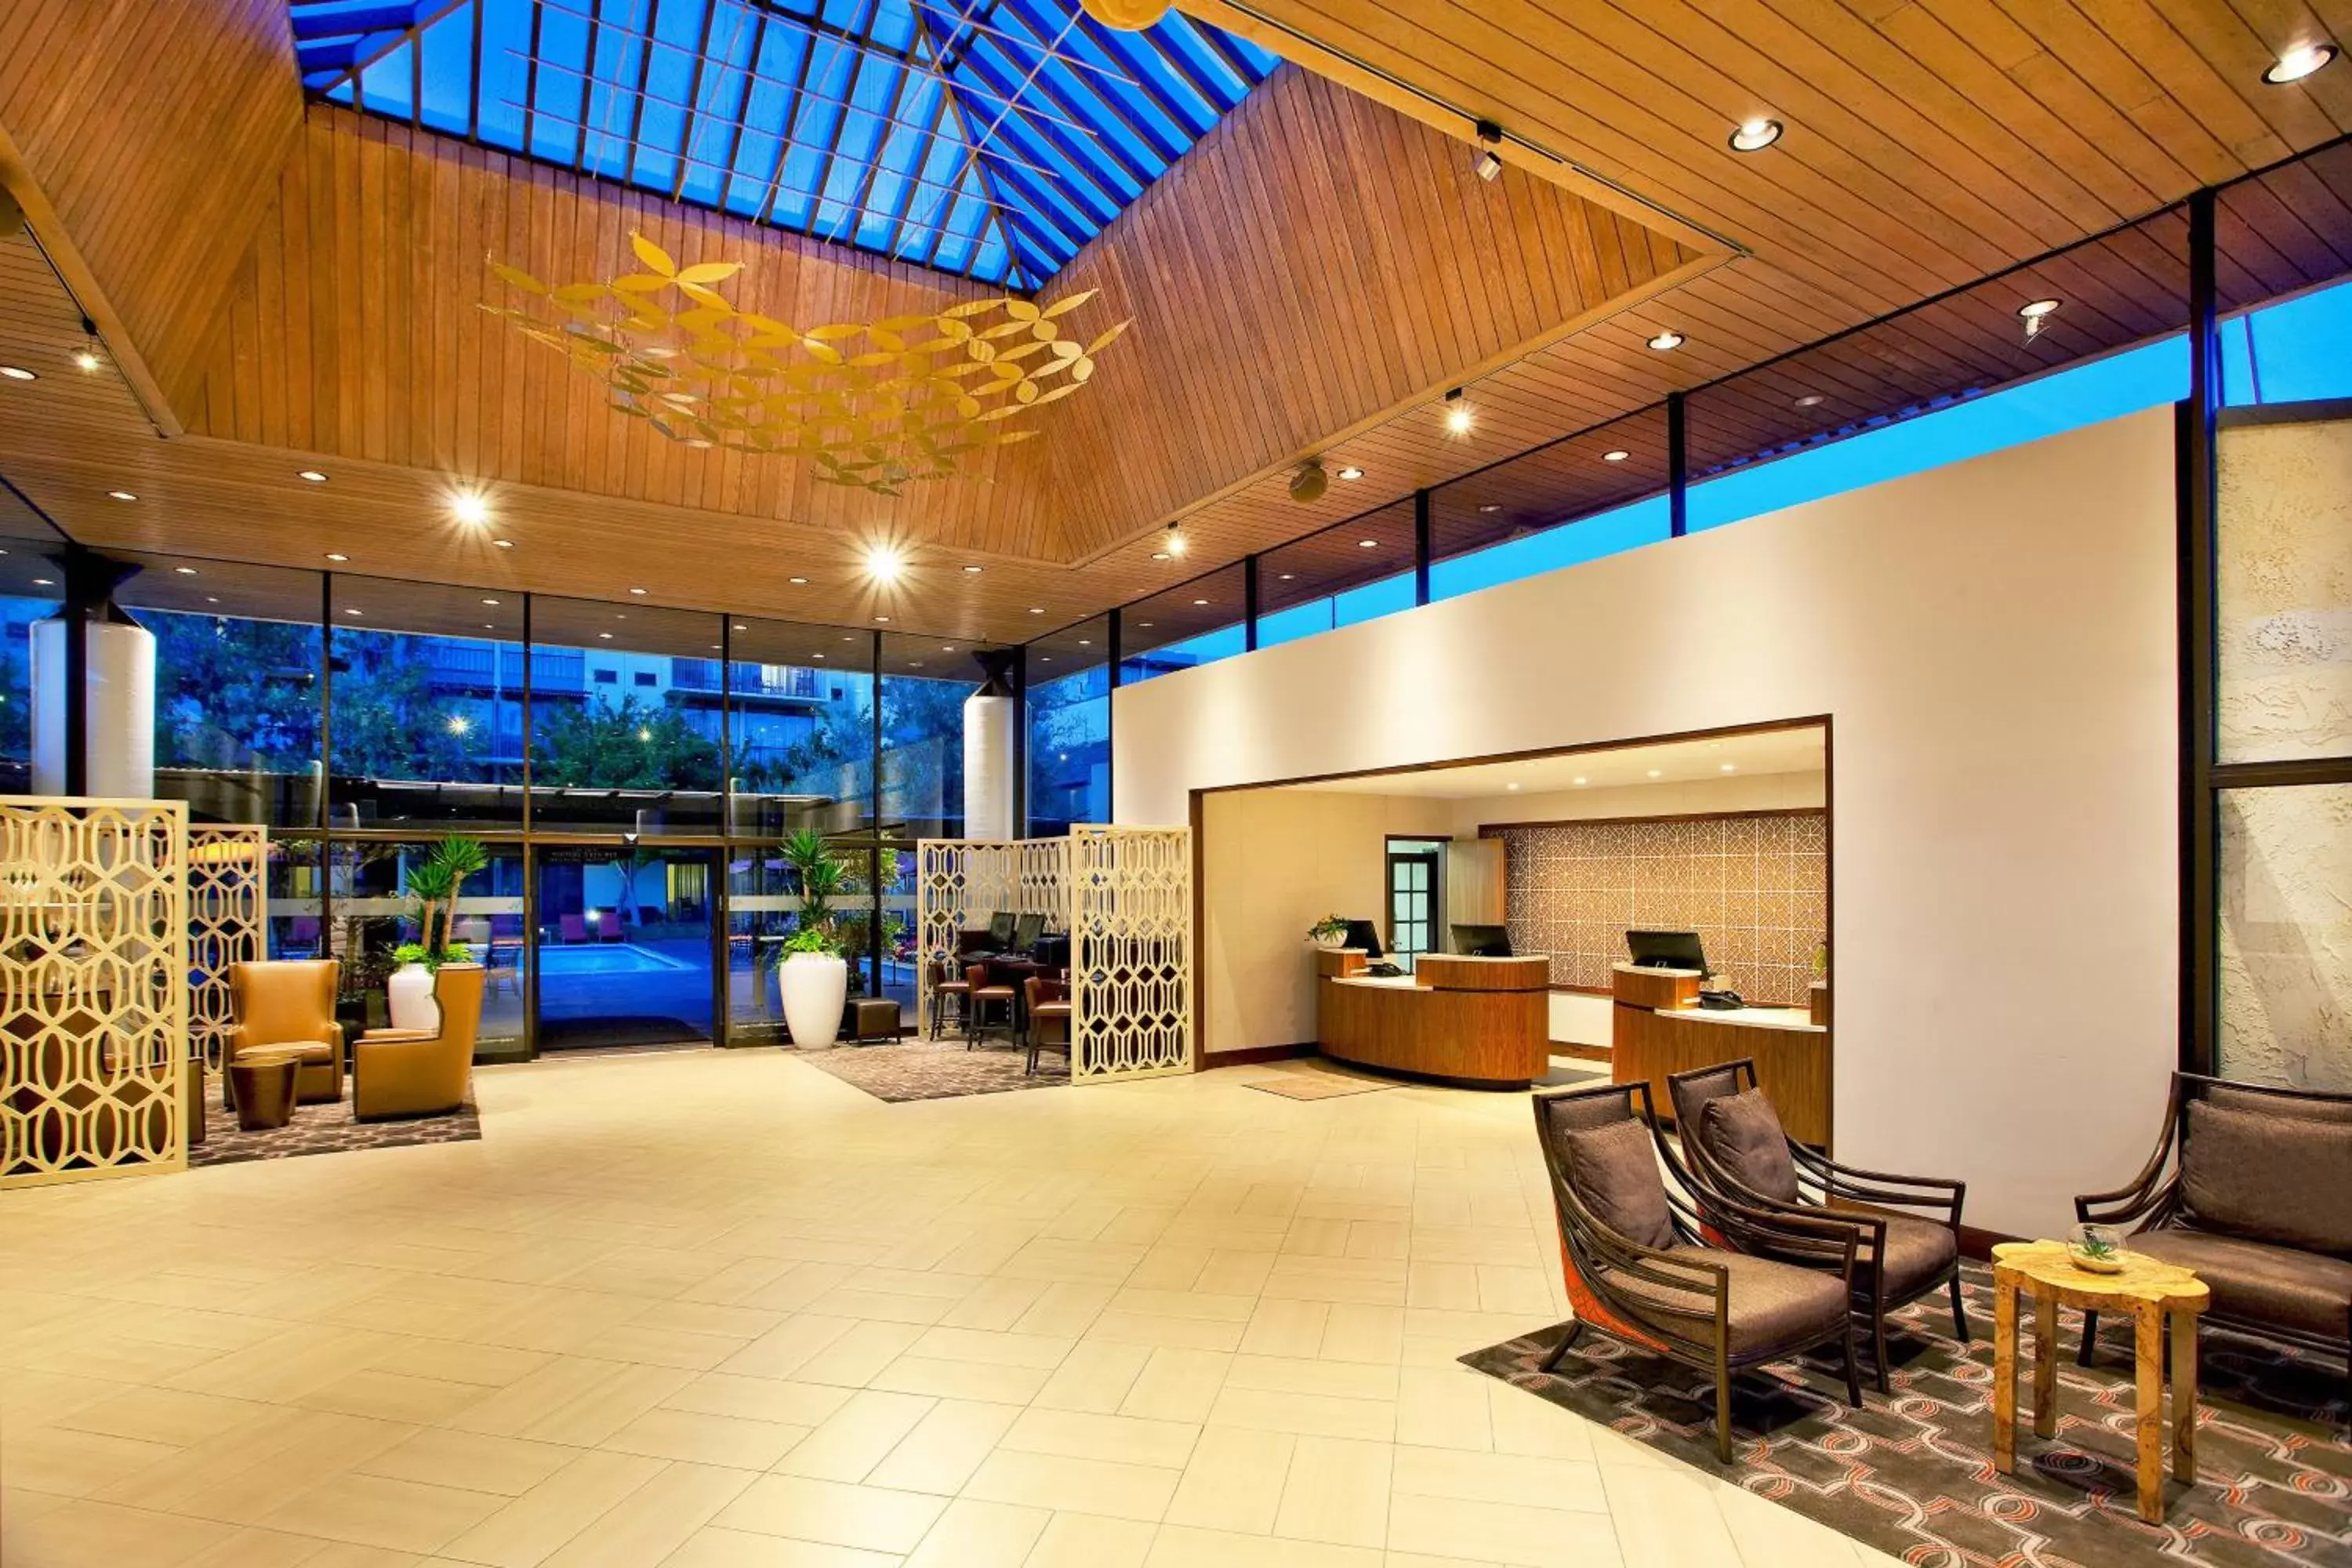 Lobby or reception, Lobby/Reception in Sheraton Palo Alto Hotel